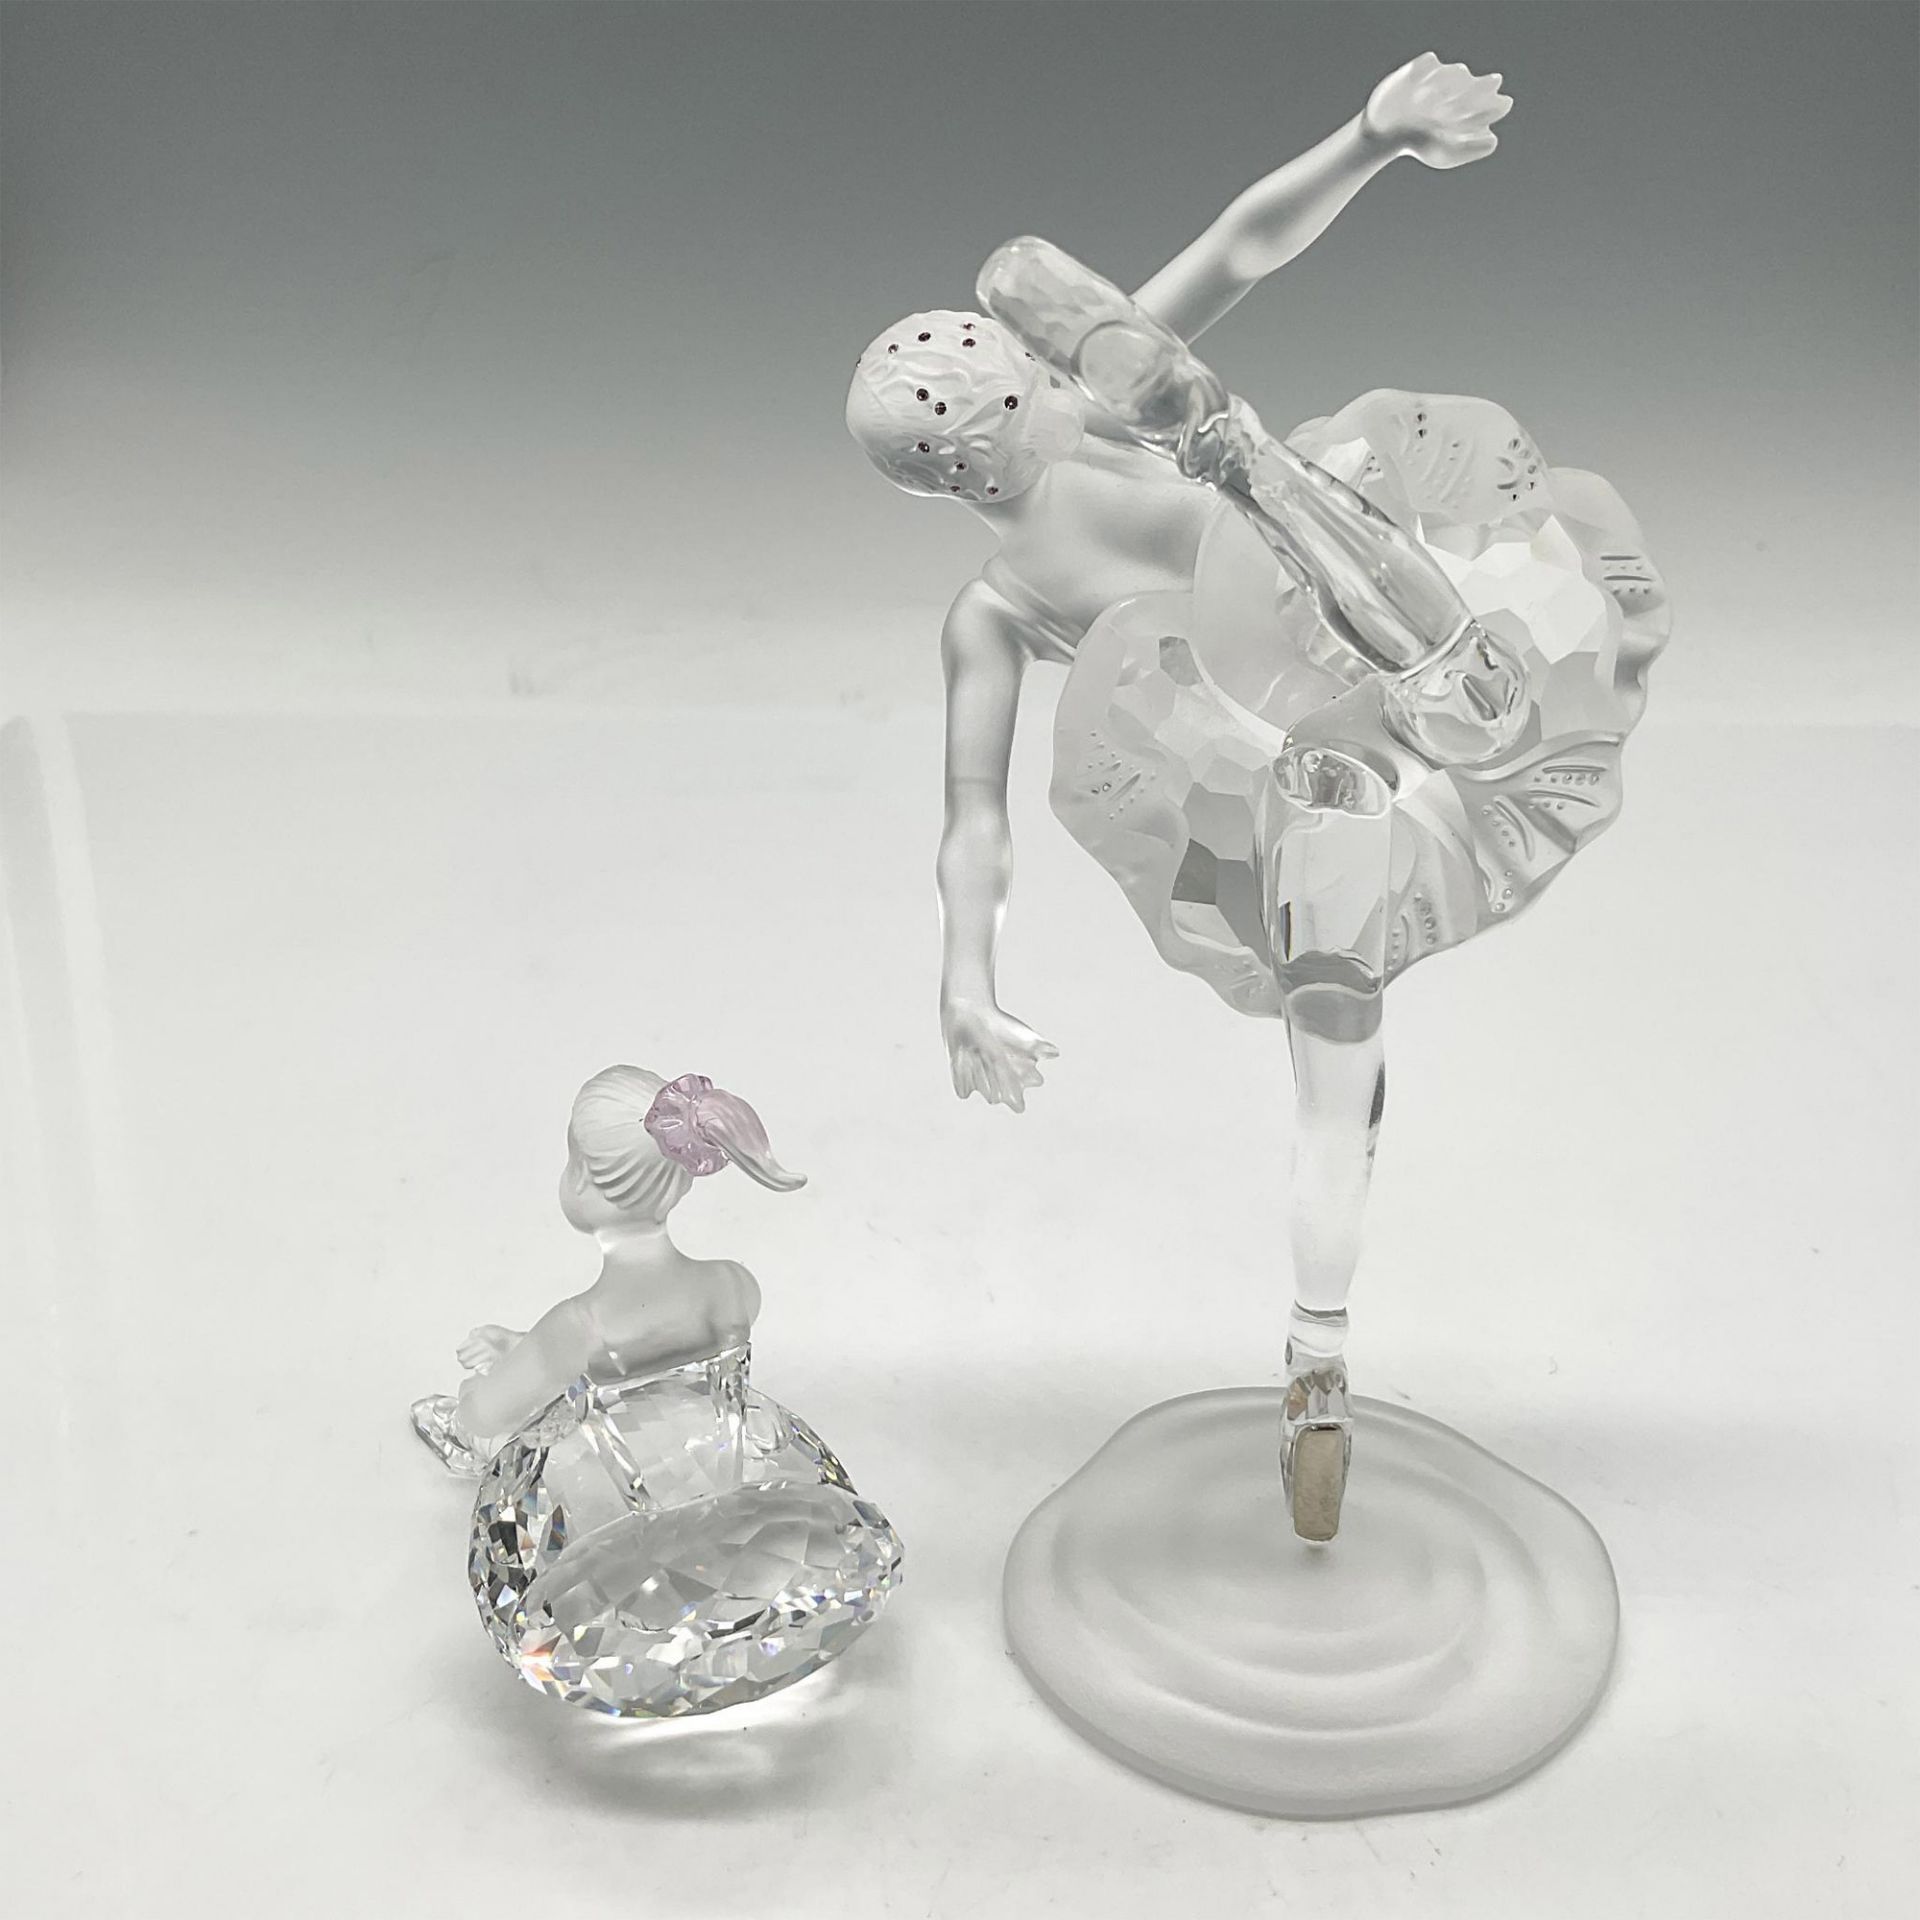 2pc Swarovski Crystal Figurines, Ballerinas - Image 2 of 3